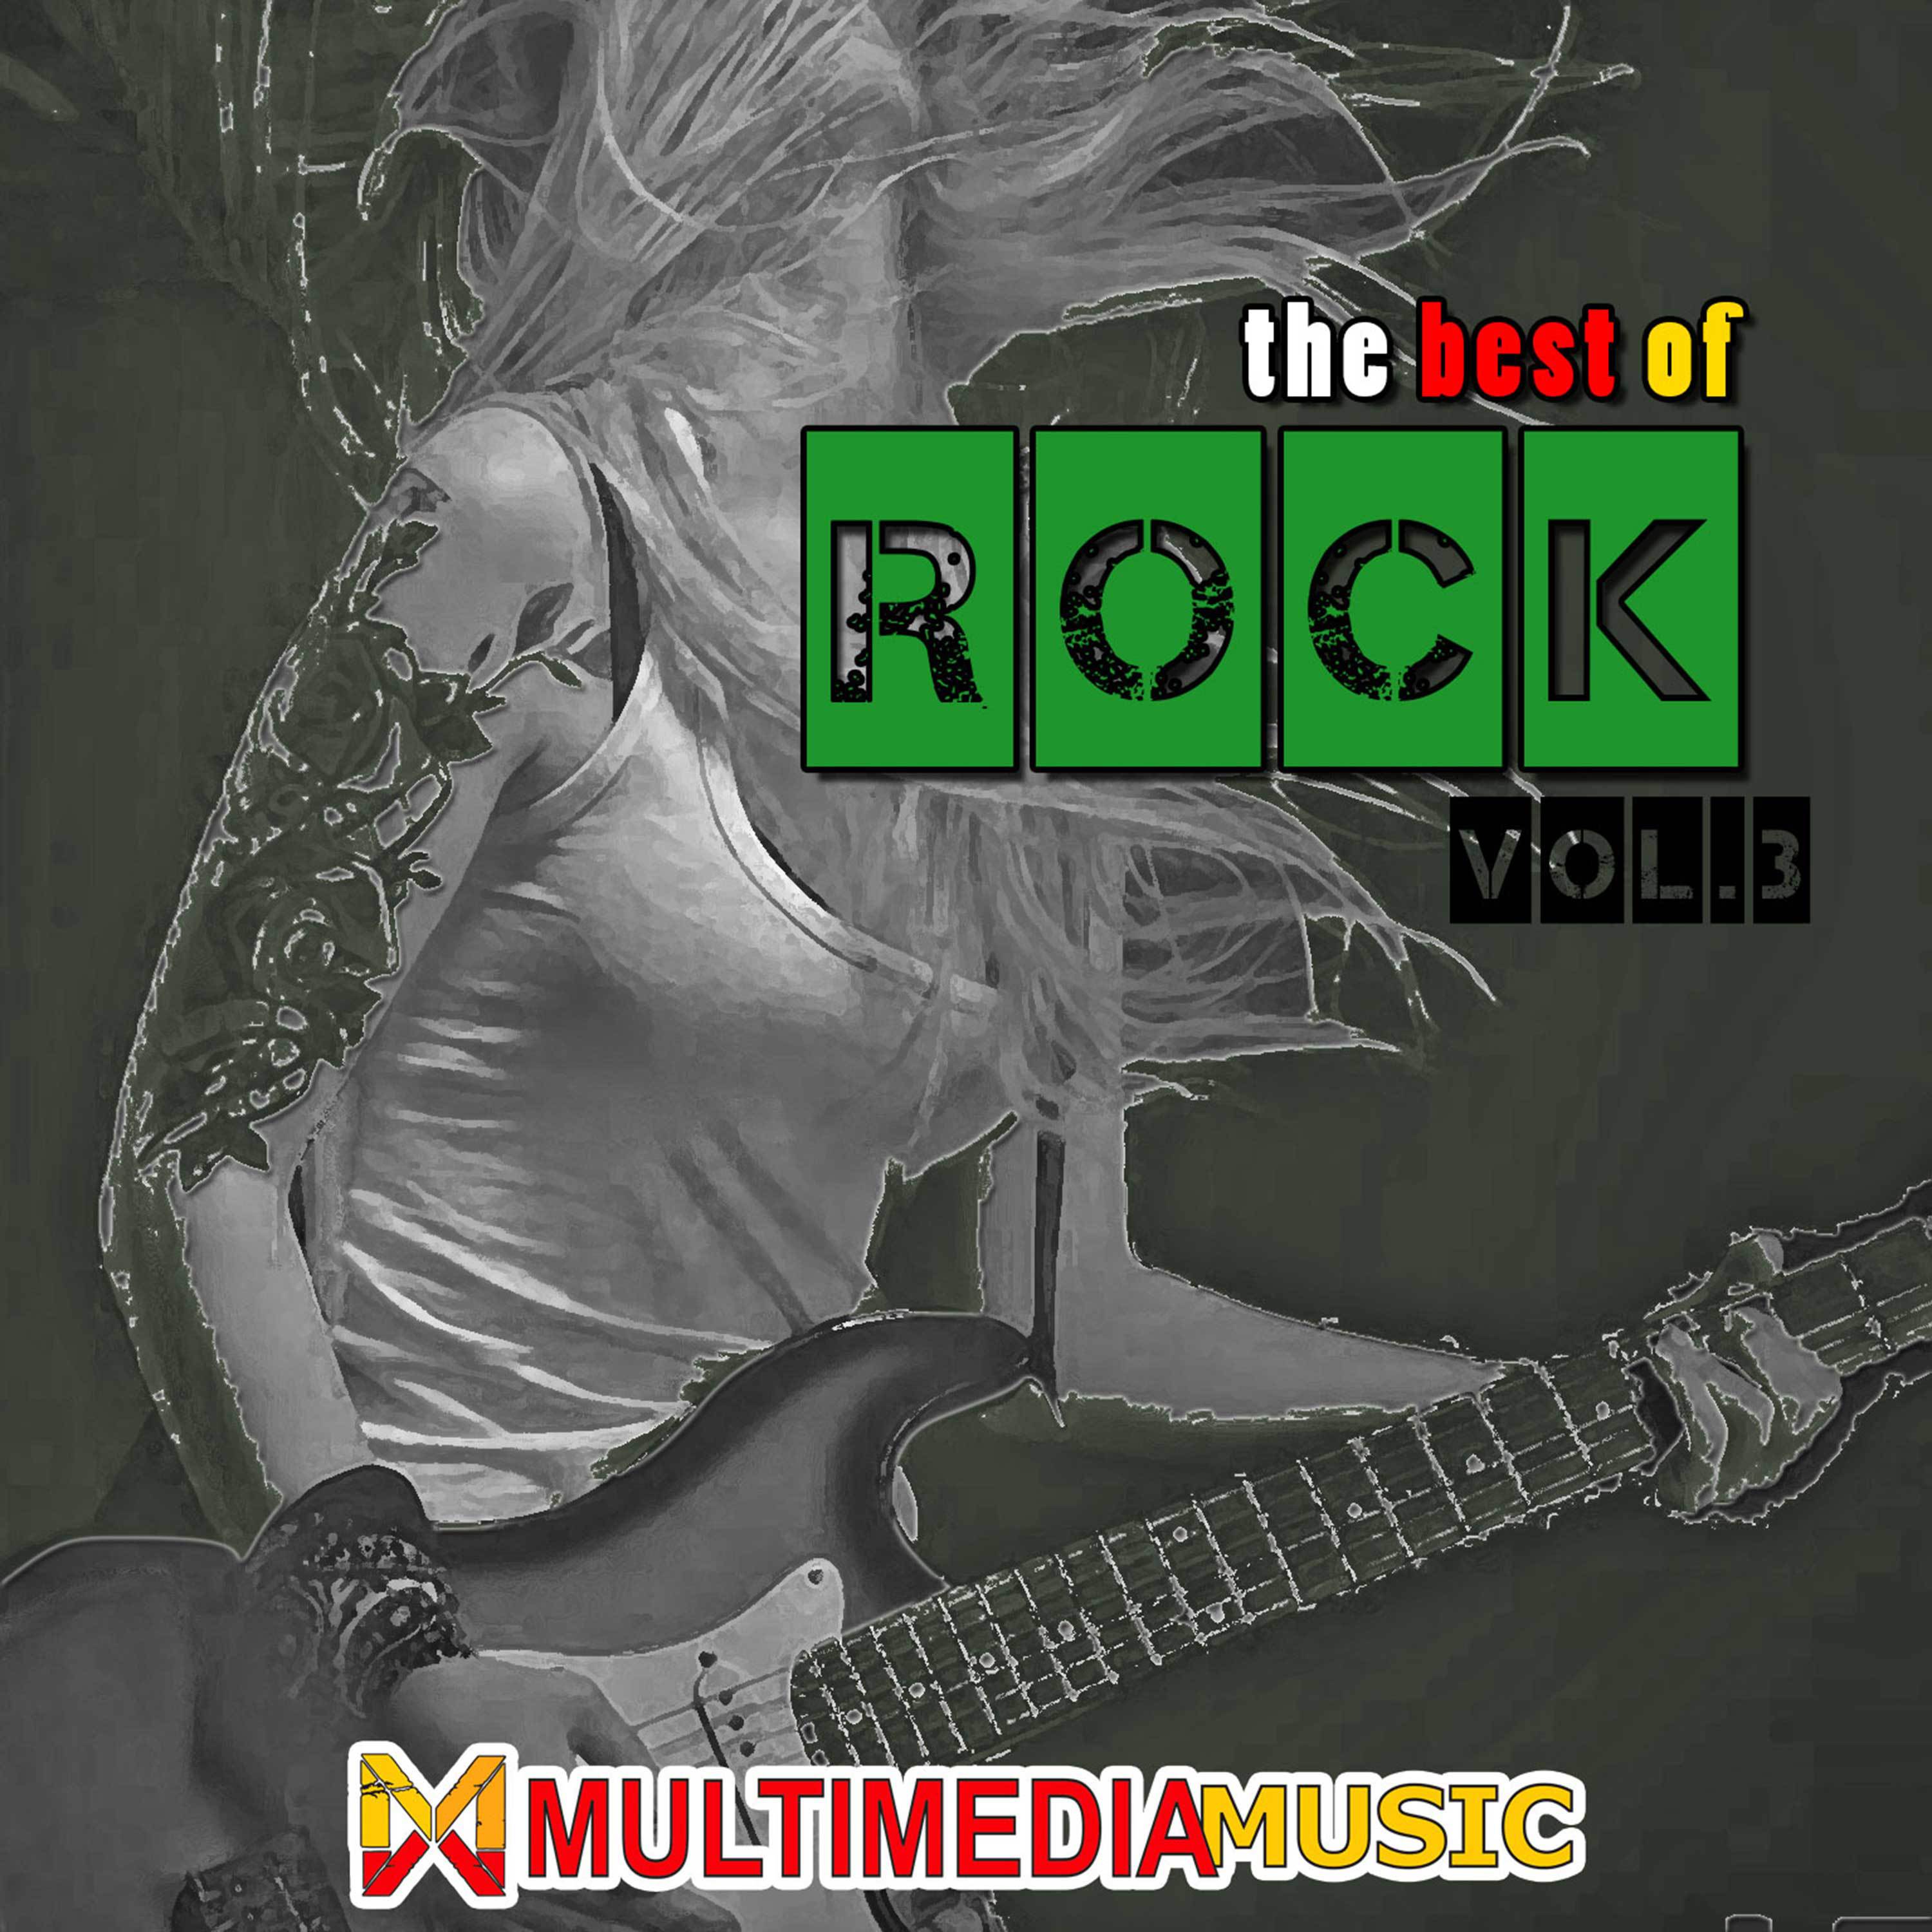 The Best Of Rock VOL3